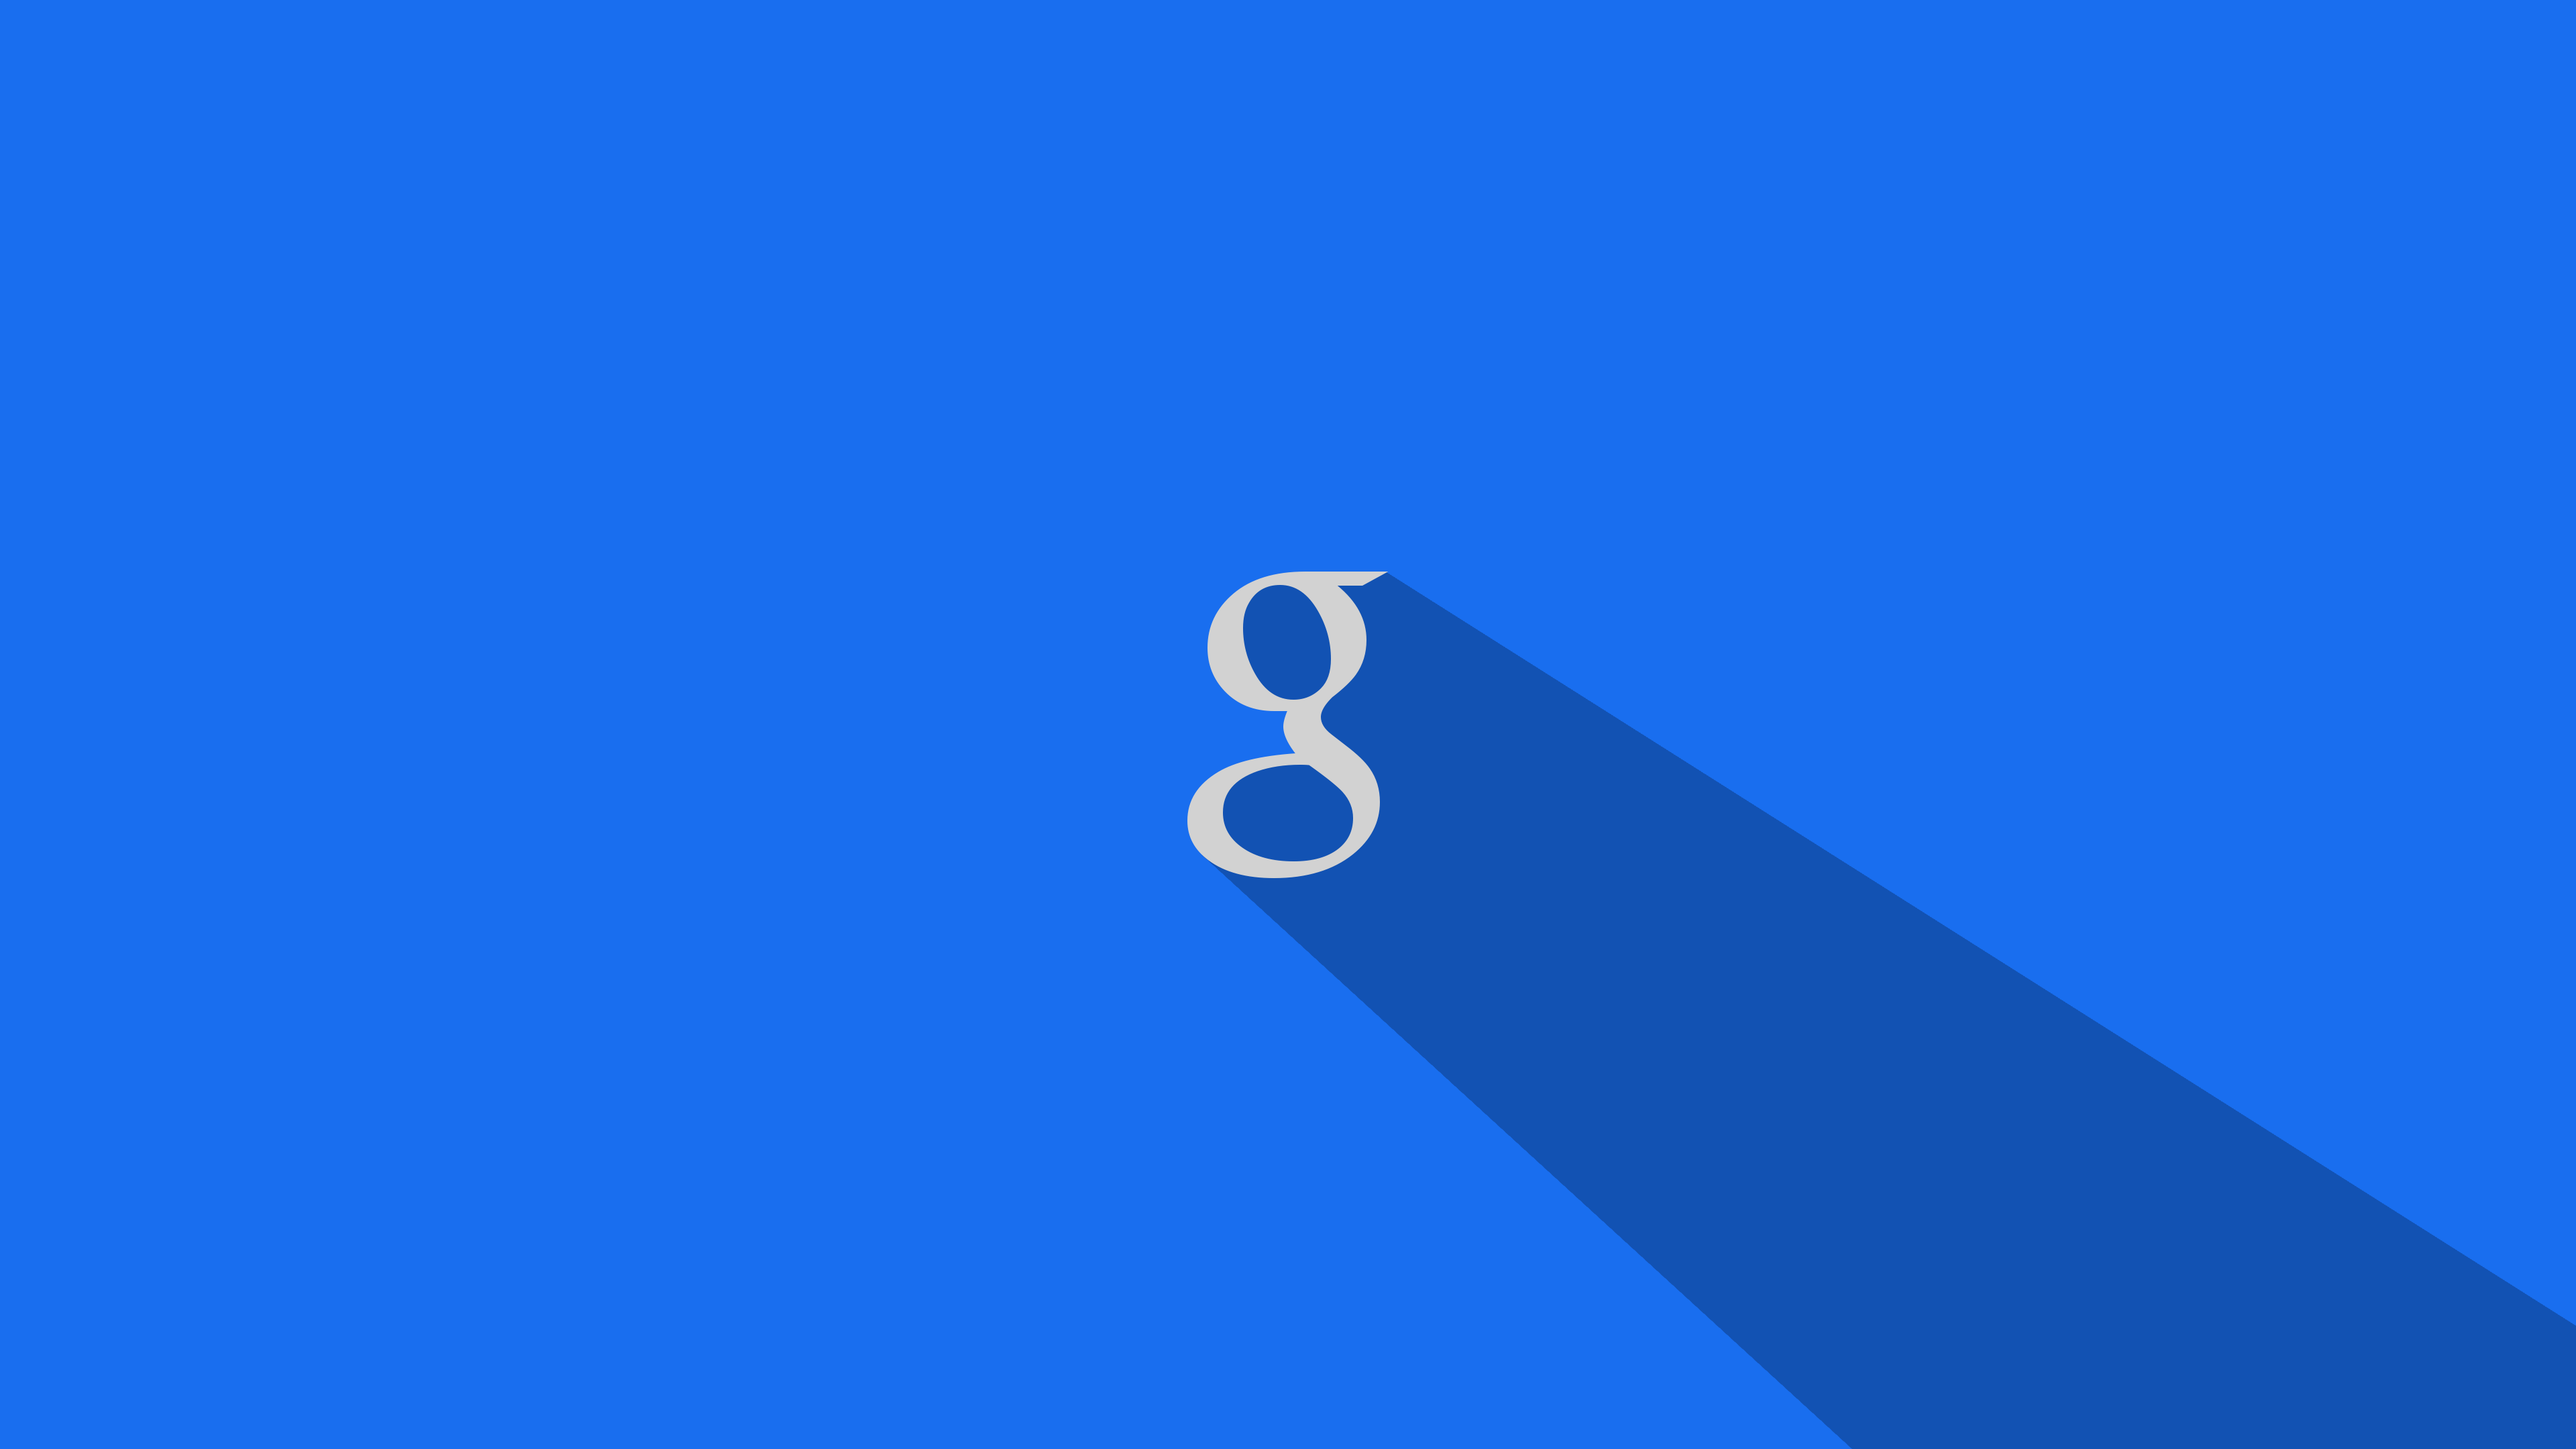 google wallpaper para pc,azul,azul cobalto,tiempo de día,azul eléctrico,texto